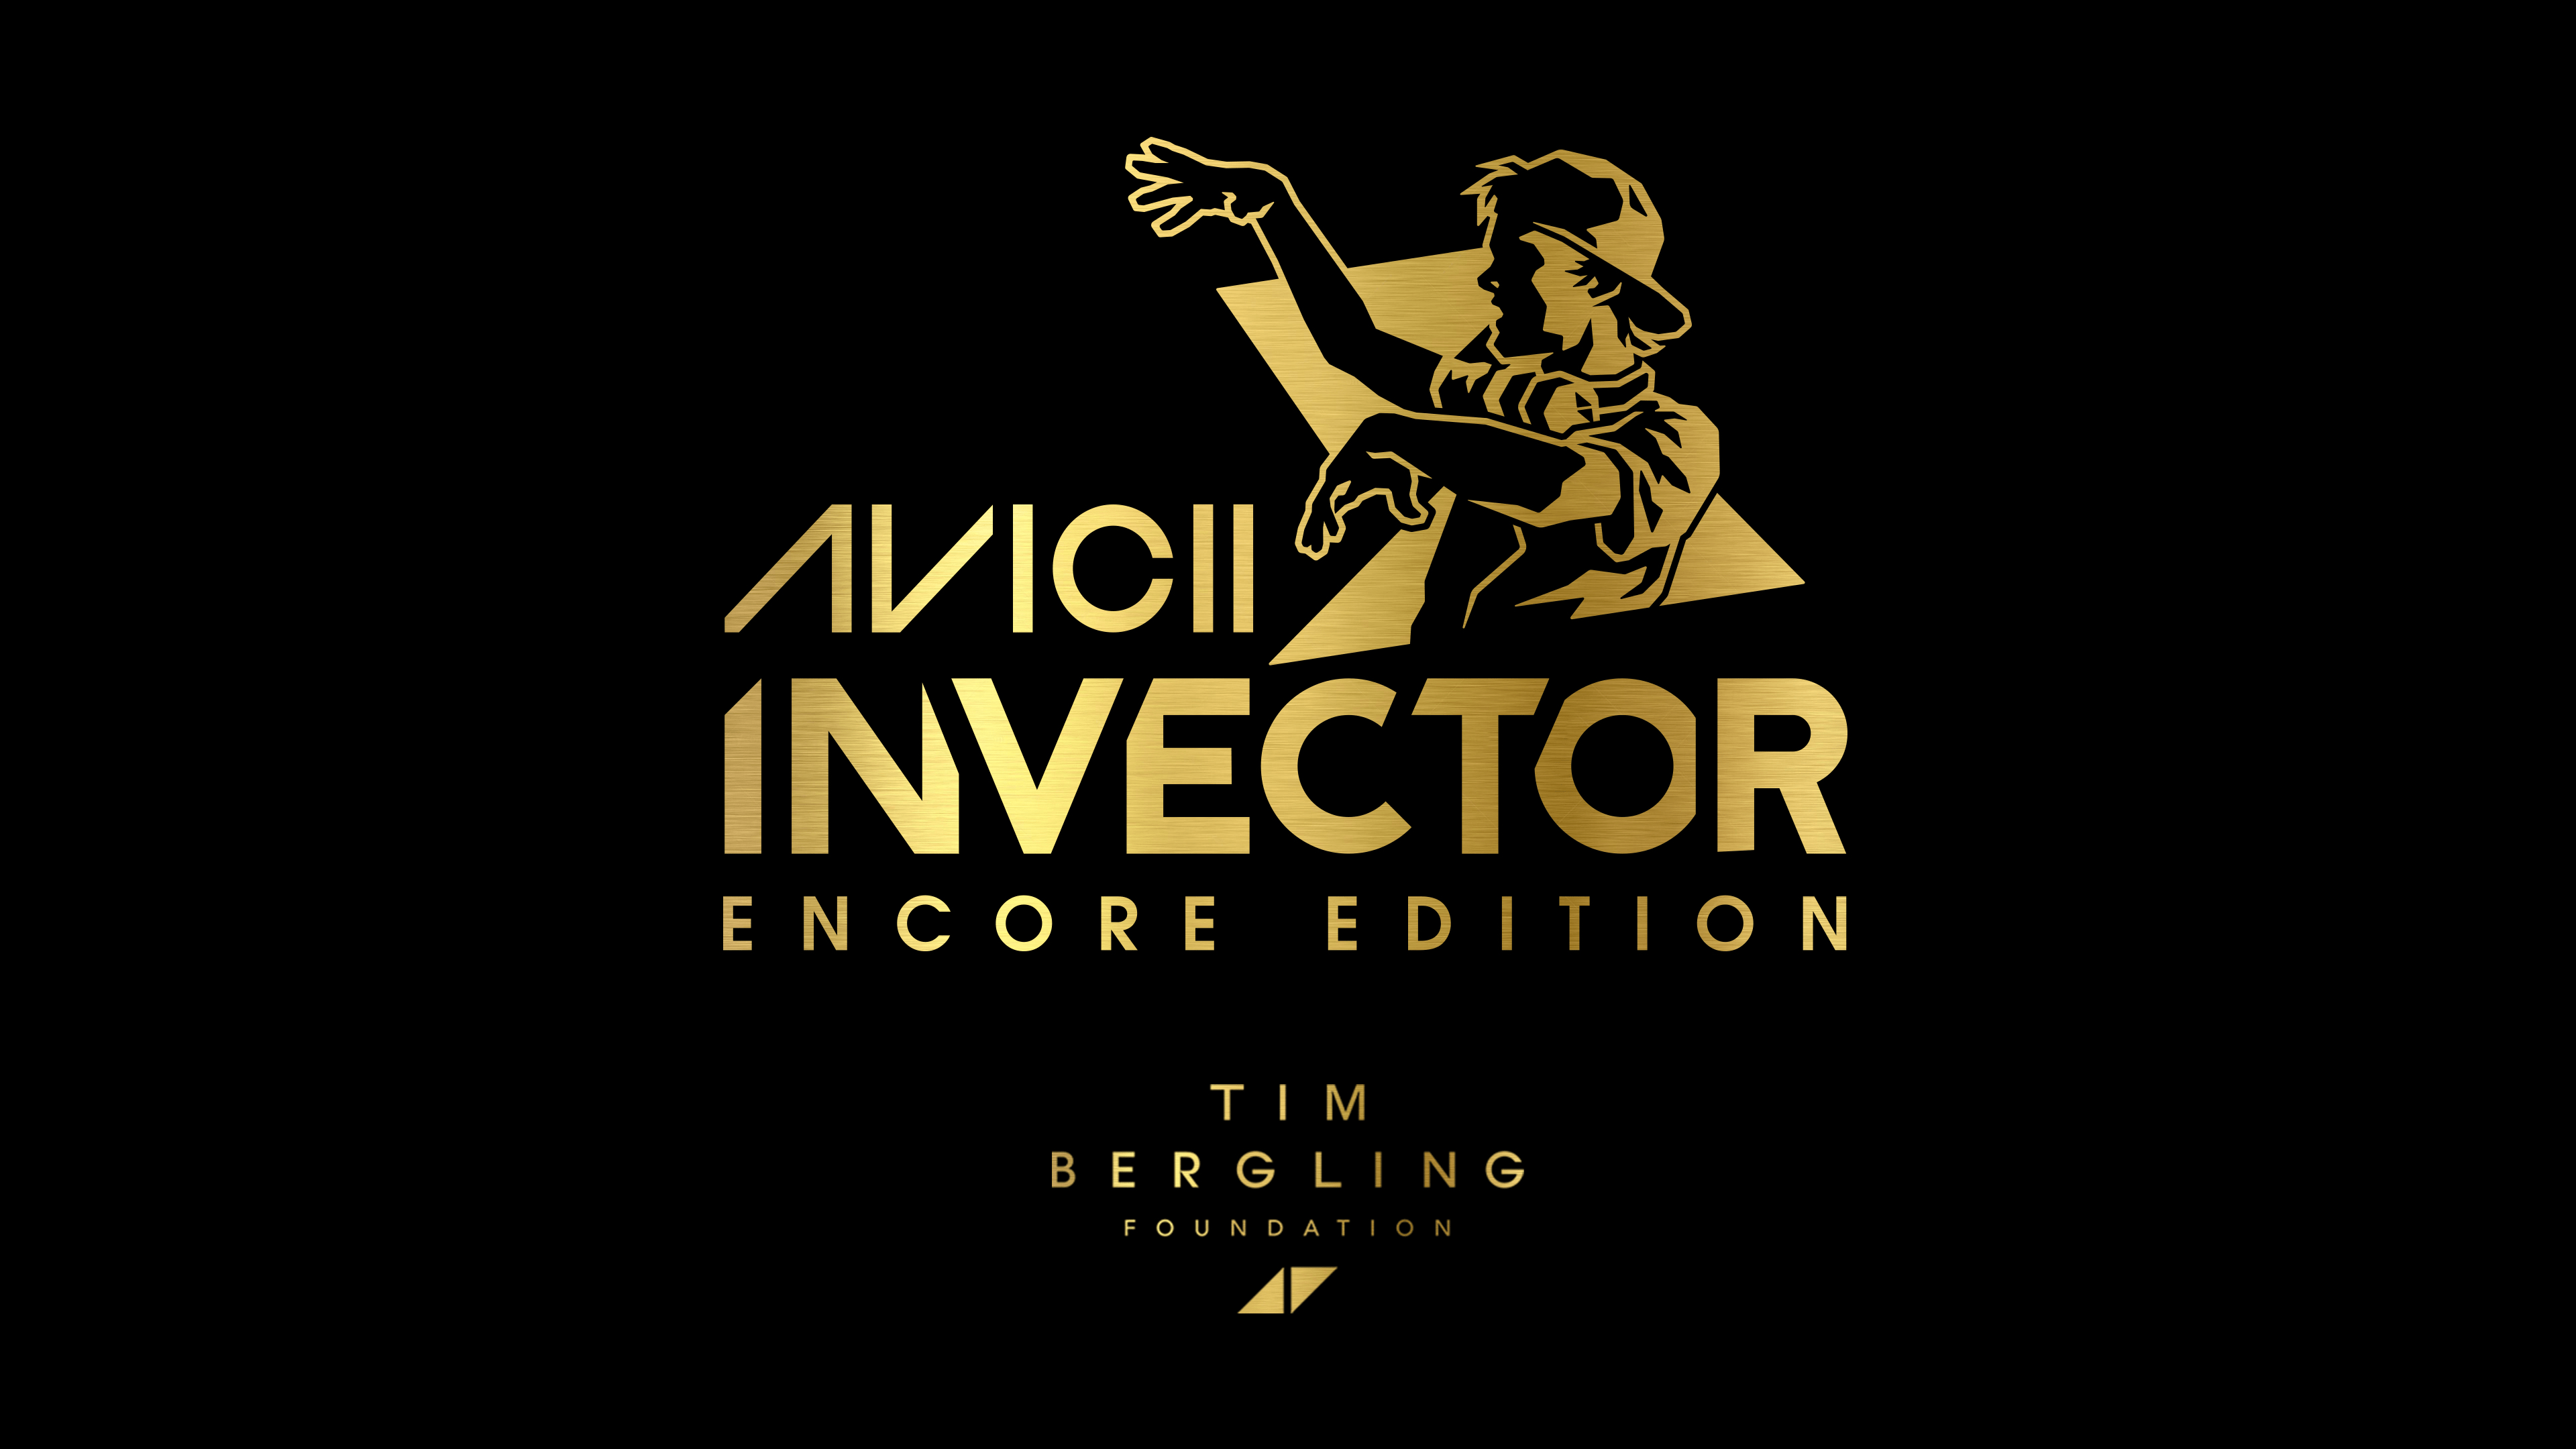 AVICII Invector: Encore Edition 